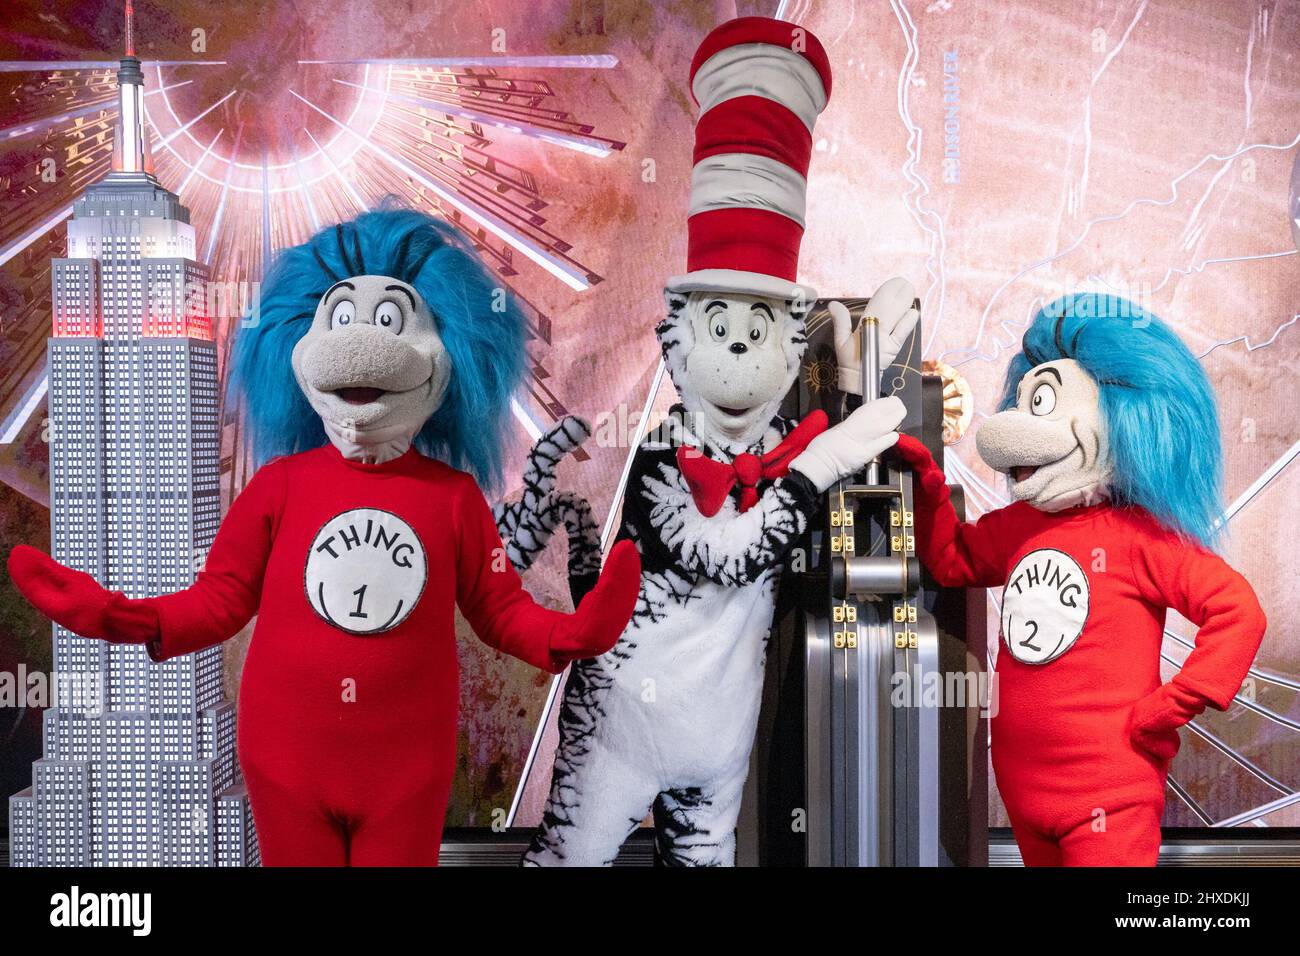 Panadería nadar resbalón El gato en el sombrero y la cosa 1 y la cosa 2 del Dr. Seuss celebran el  65th aniversario del libro de los niños amados en el Empire State Building  el